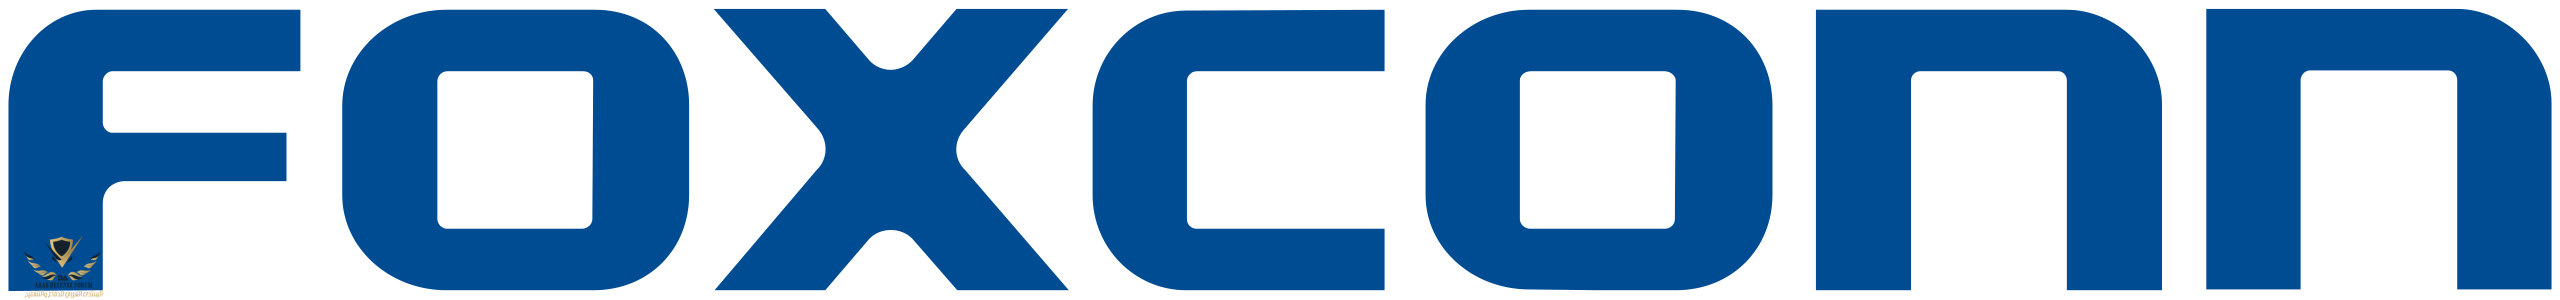 Foxconn_Logo.svg.png